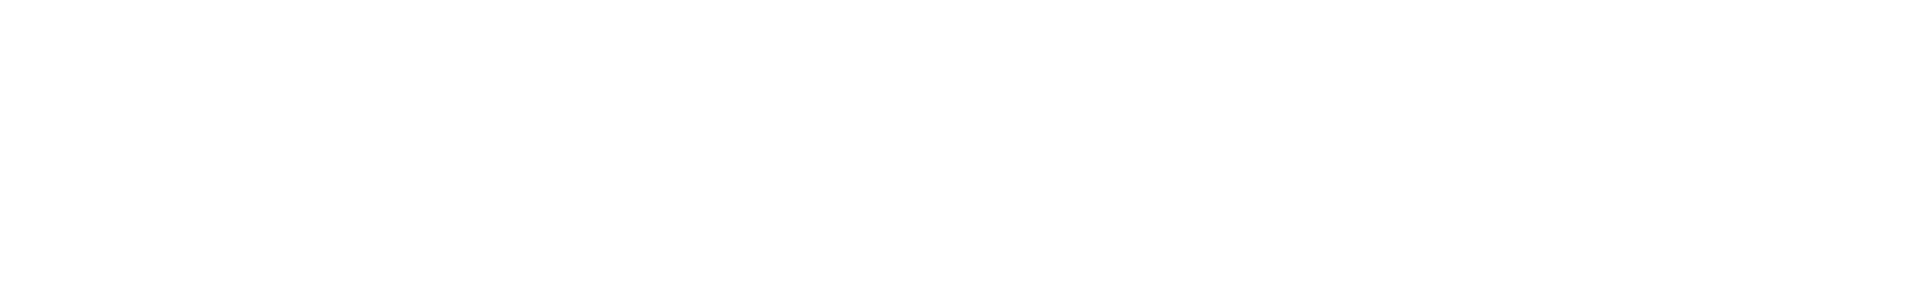 Metvisual.com